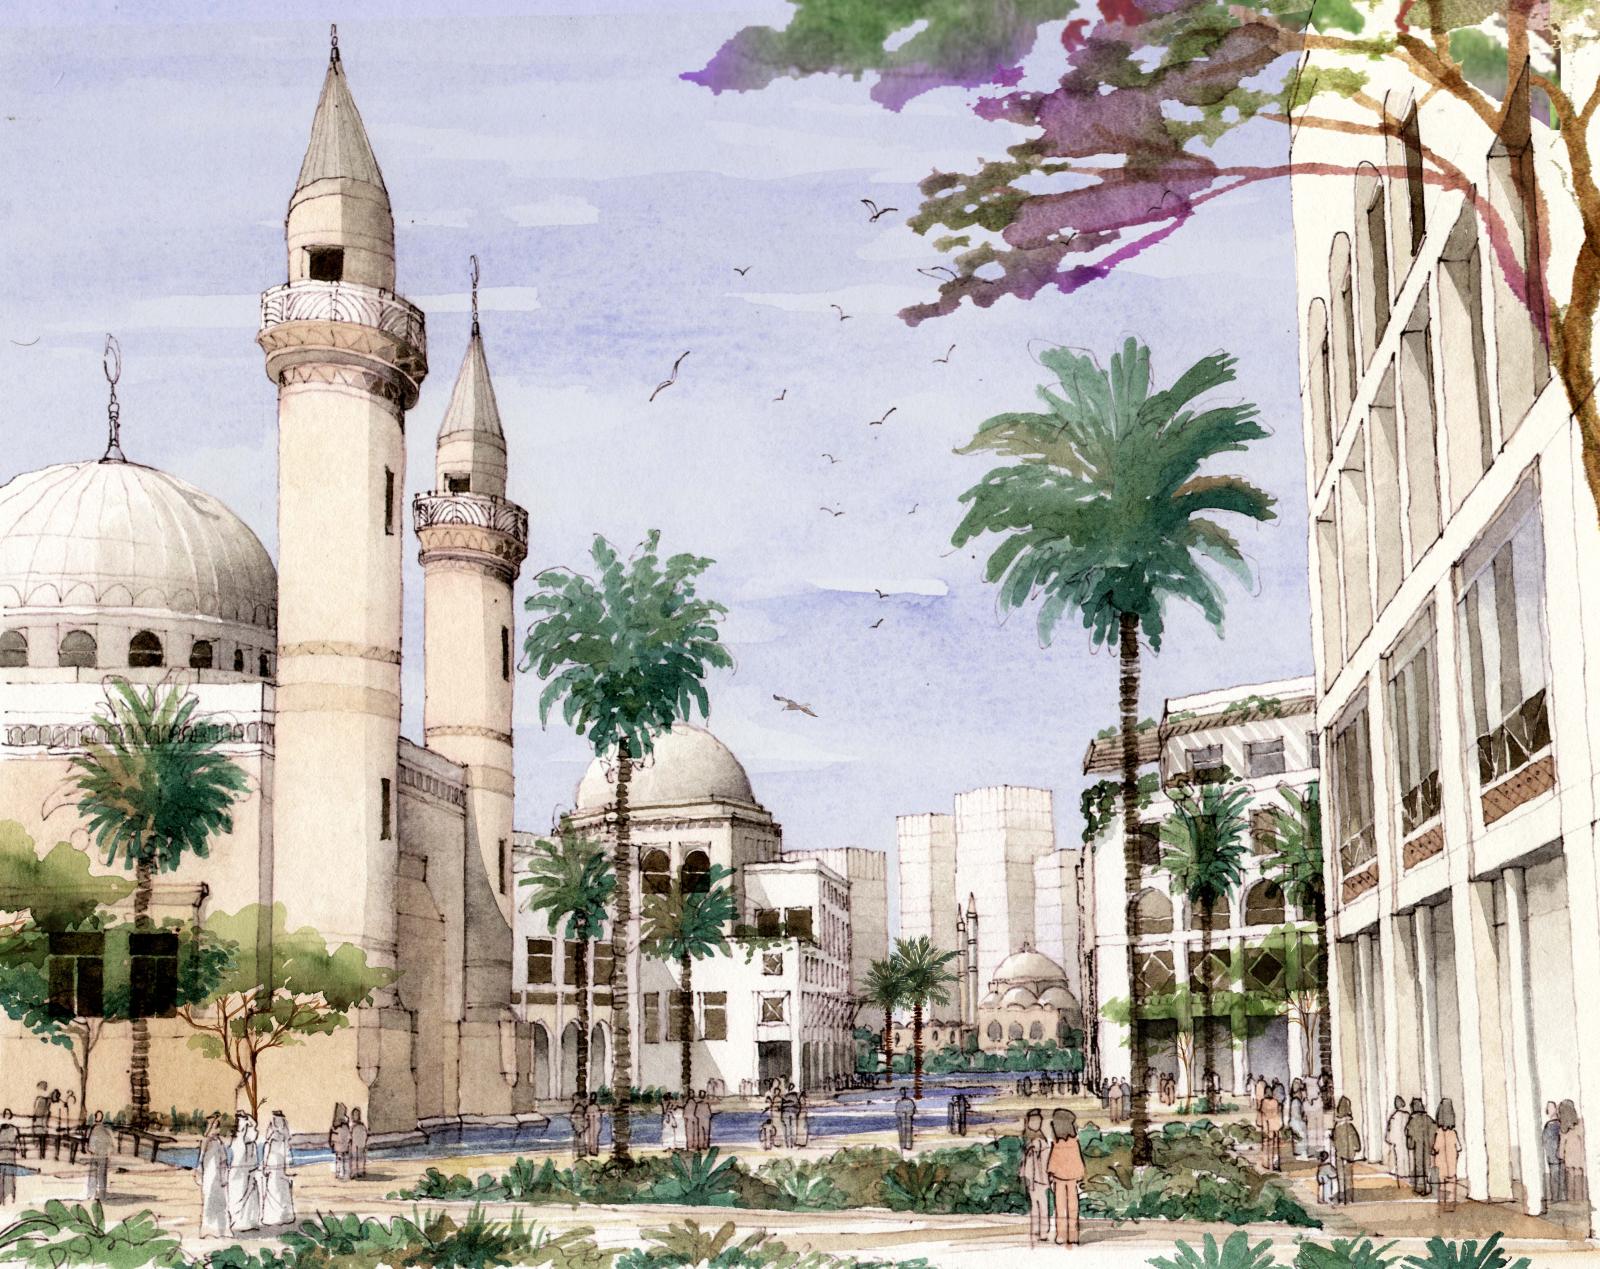 Sharjah Lagoons - Master Planning